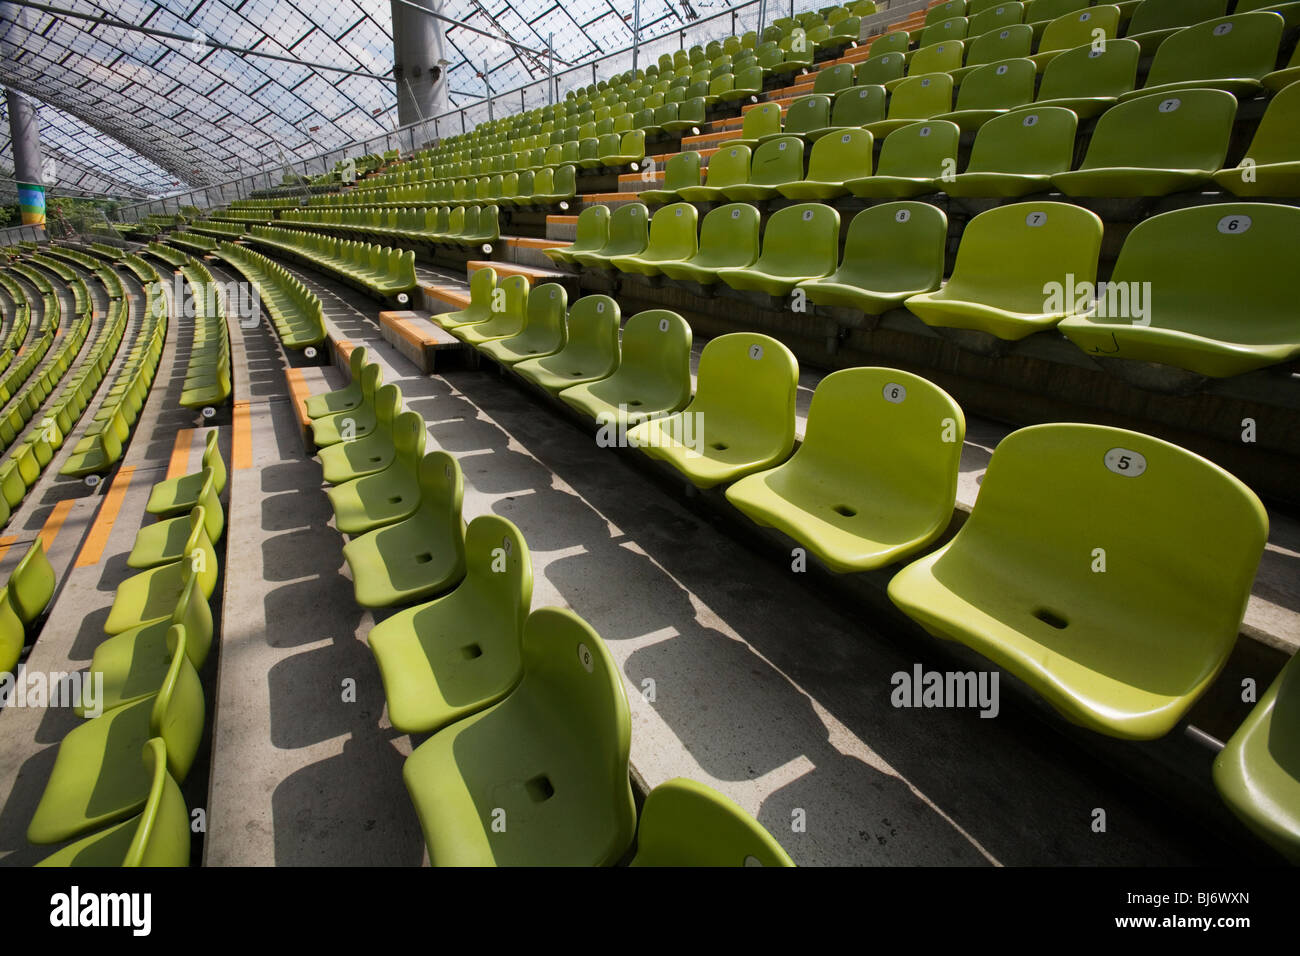 Frei Otto se crispa de structures pour l'Jeux olympiques de Munich 72. Stade olympique et le parc. Munich Allemagne Banque D'Images